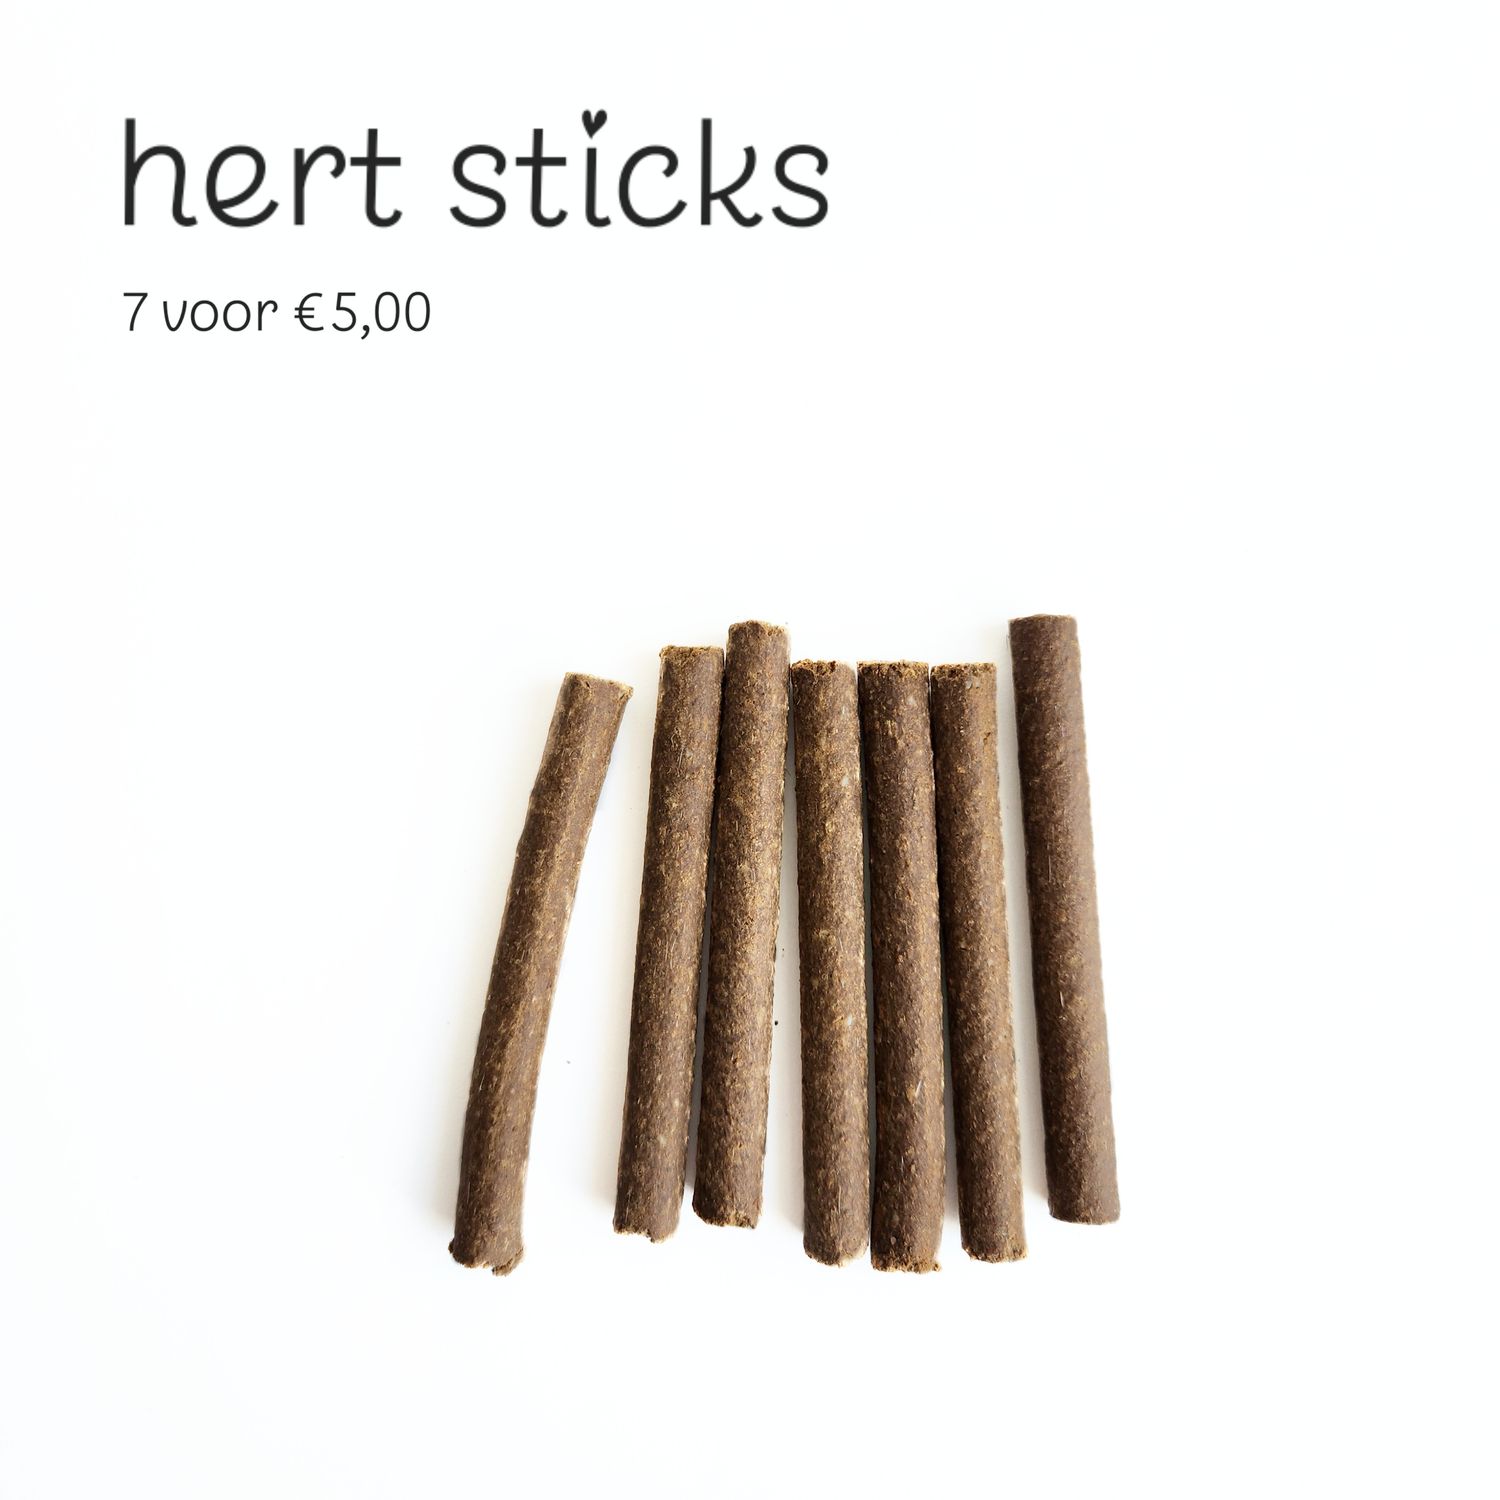 Hert sticks